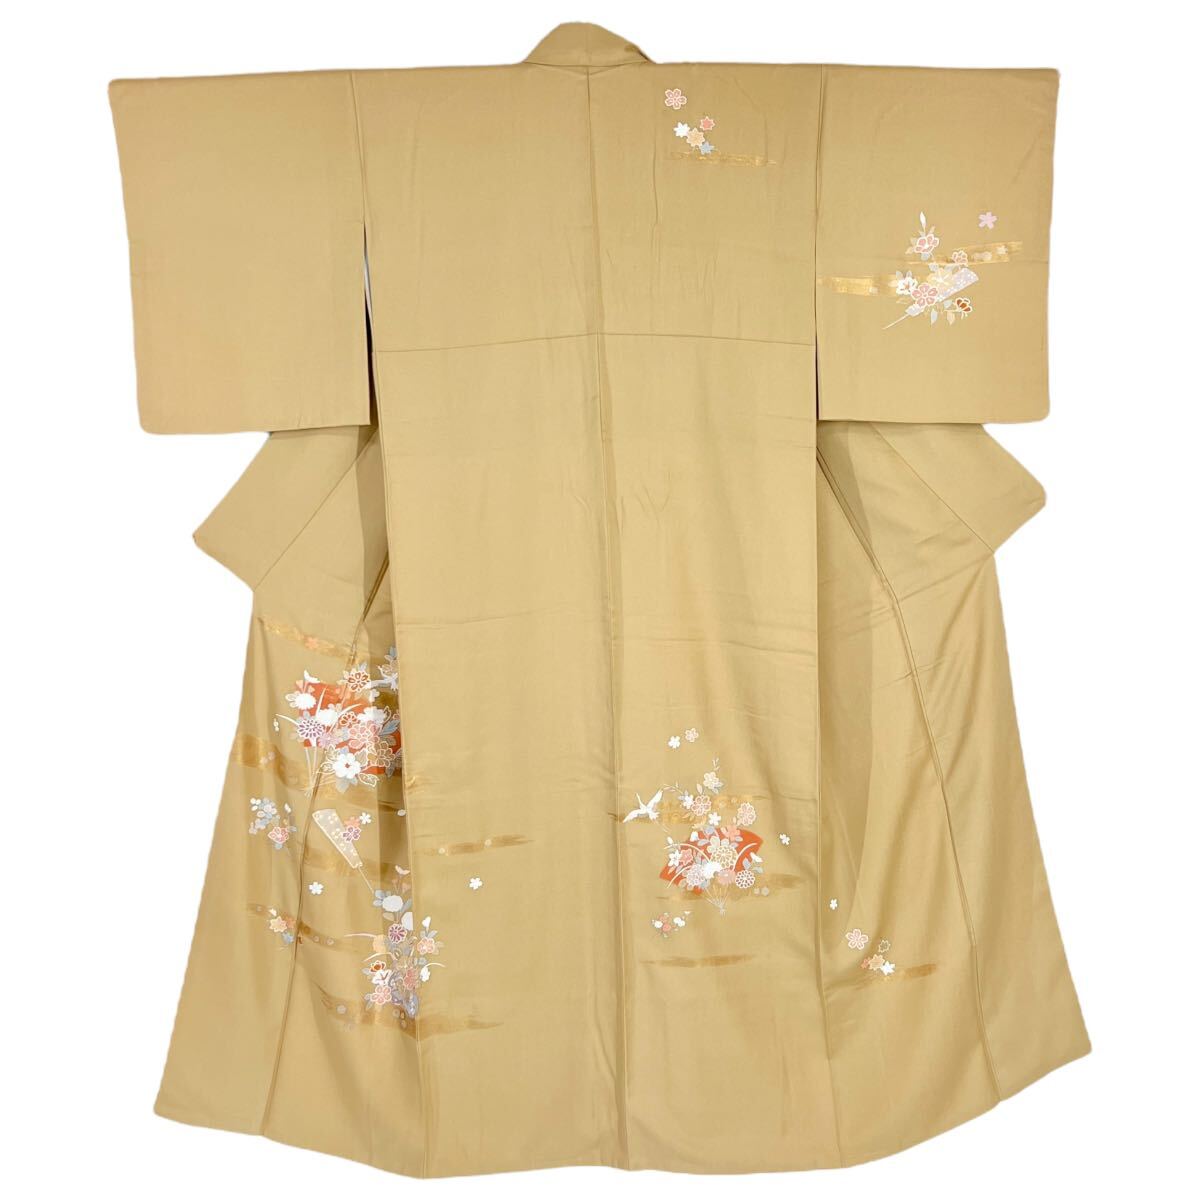 付下げ・長襦袢セット 附下 付け下げ 訪問着 袷着物 きもの フォーマル リサイクル着物 kimono 中古 仕立て上がり 身丈154.5cm 裄丈64cm_画像5